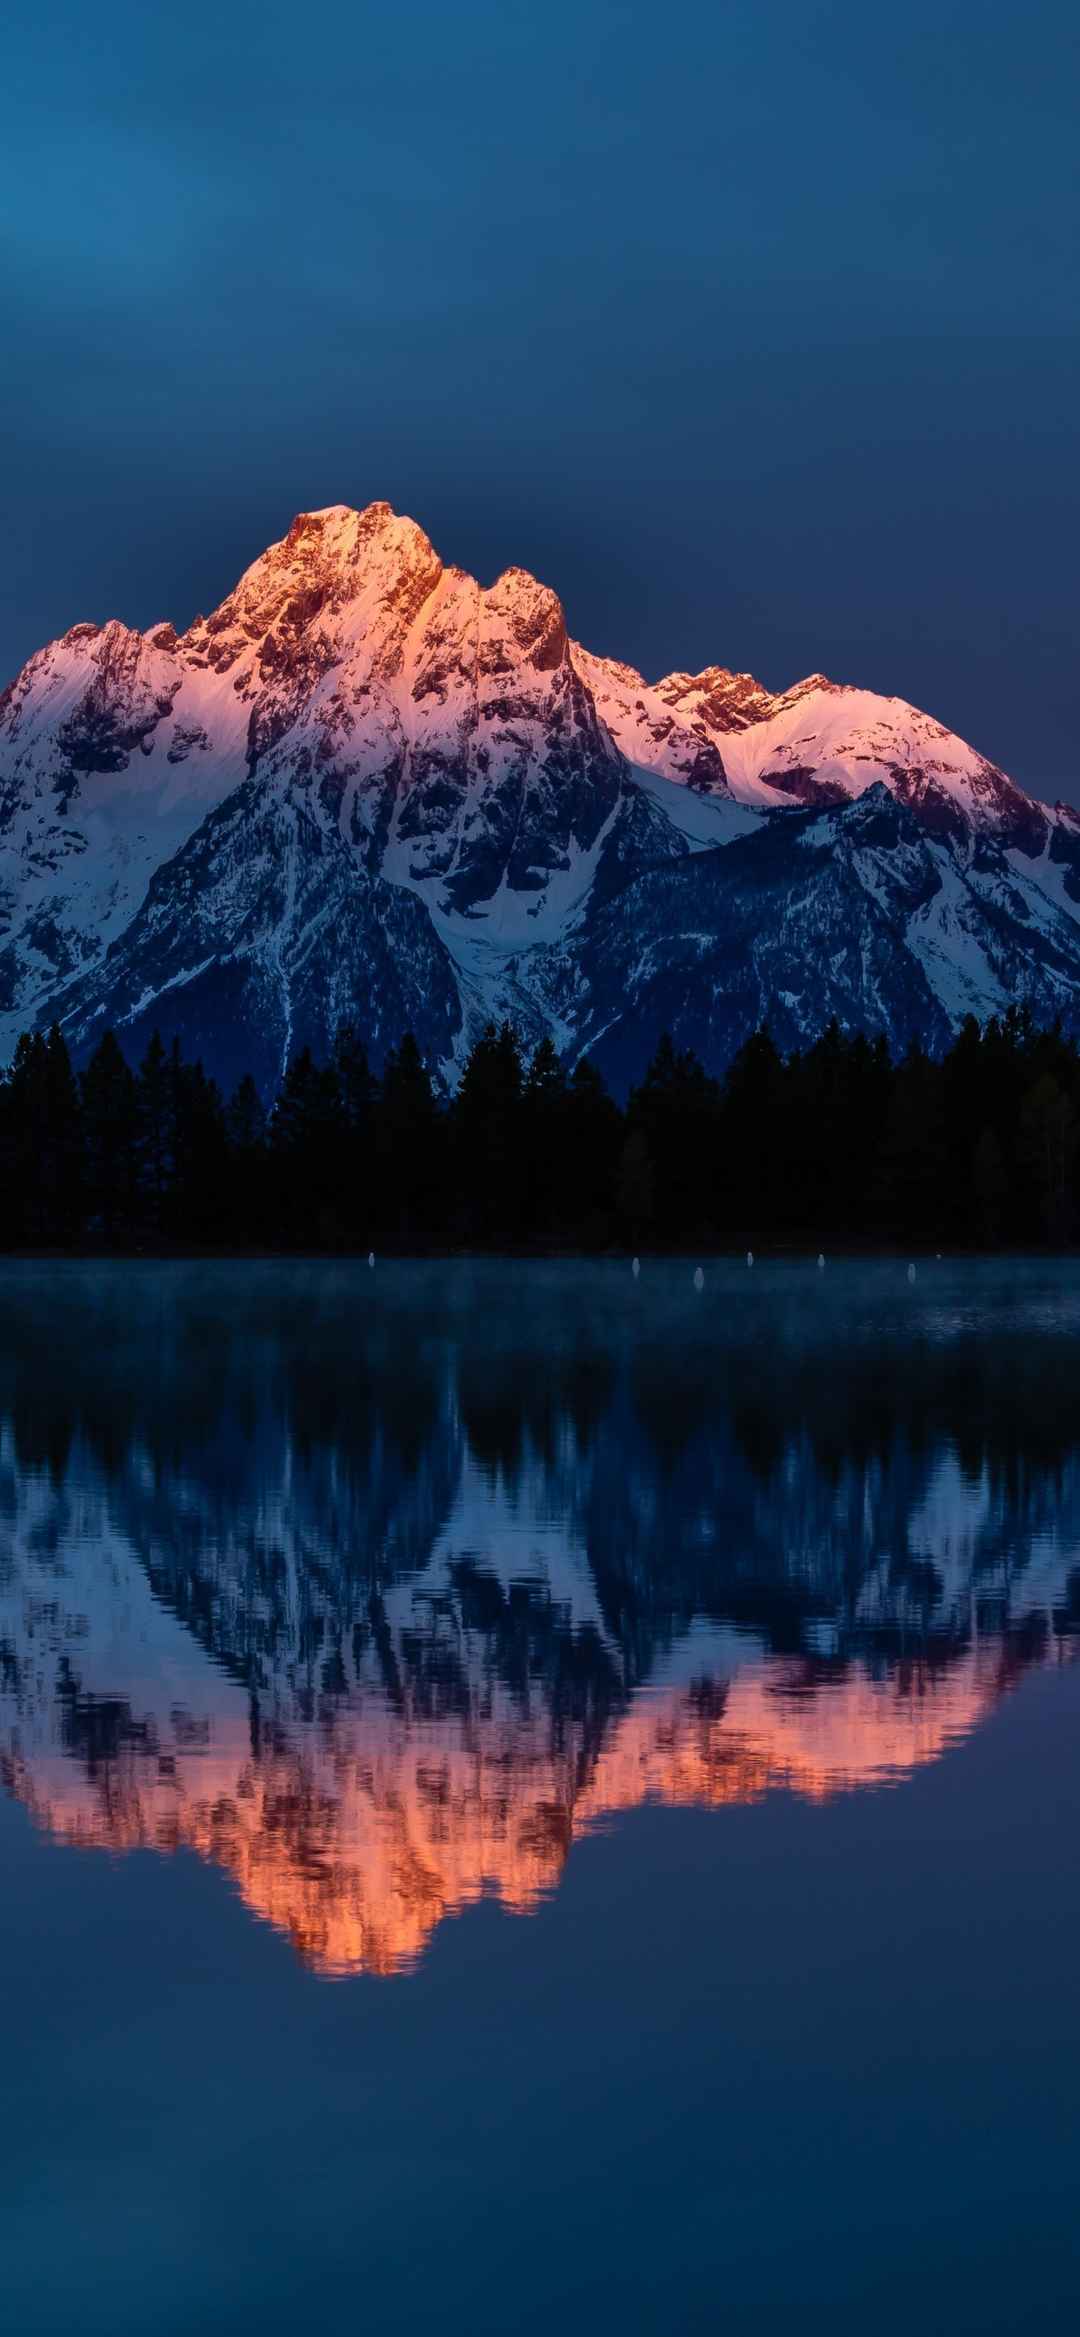 著名旅游景点的雪山倒影在湖泊的手机壁纸